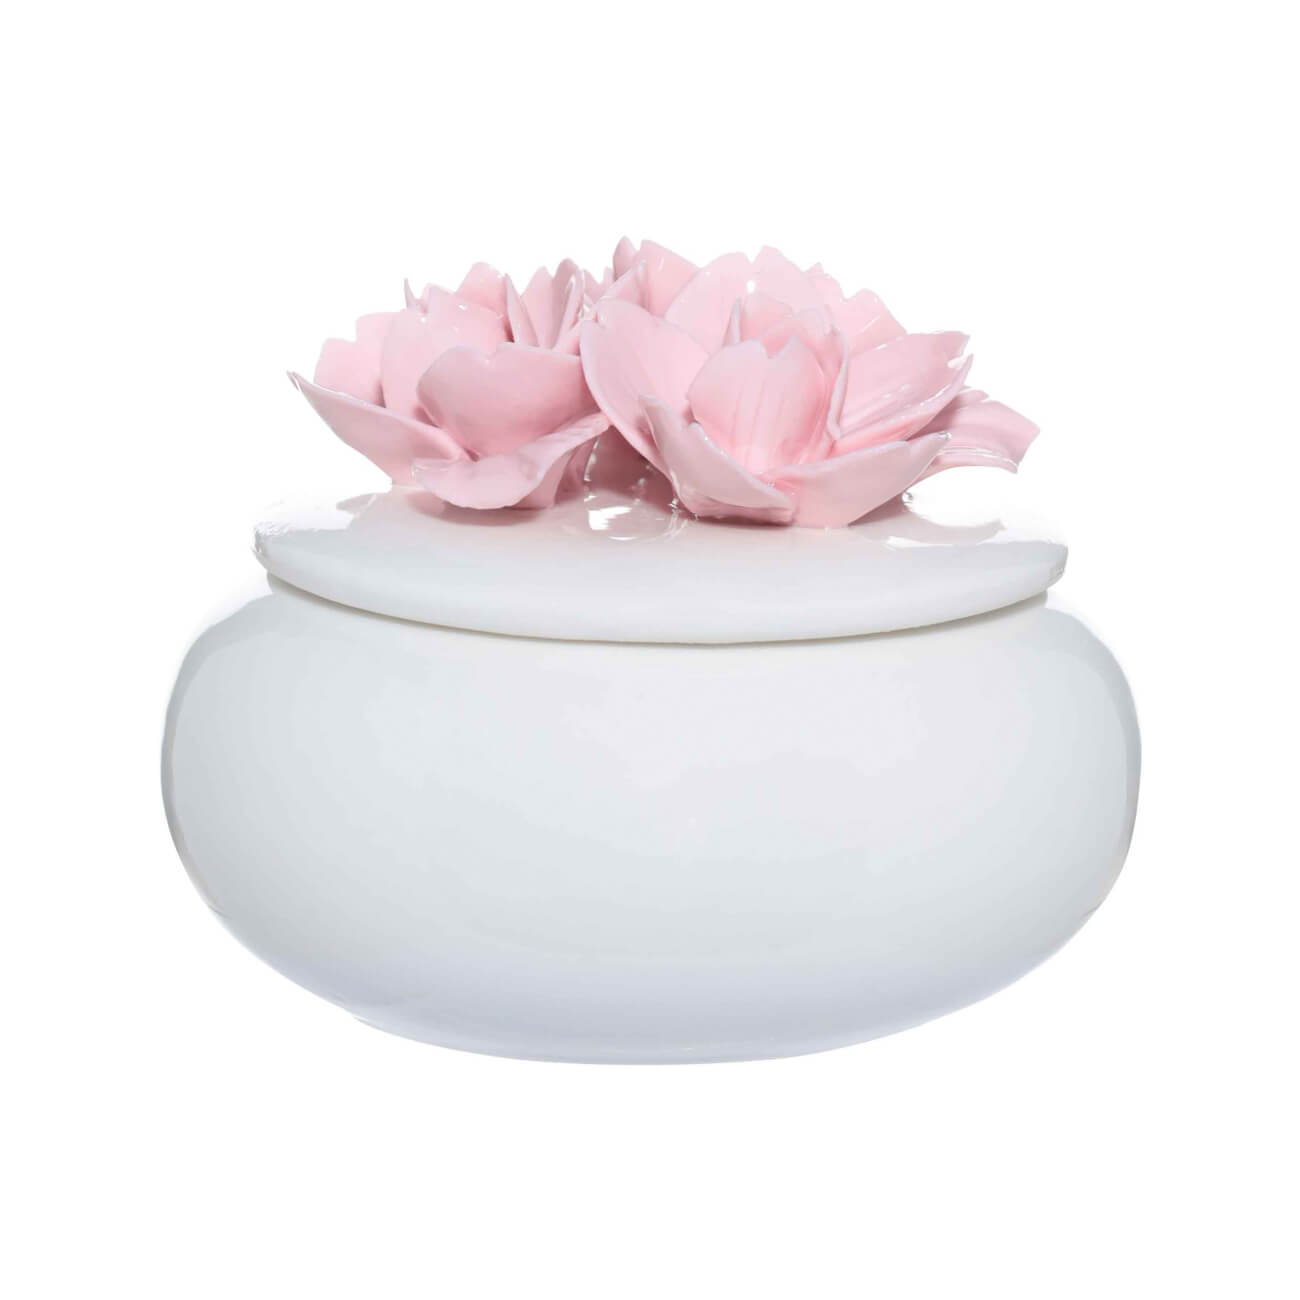 Шкатулка для украшений, 11х9 см, керамика, белая, Цветы, Magnolia - фото 1